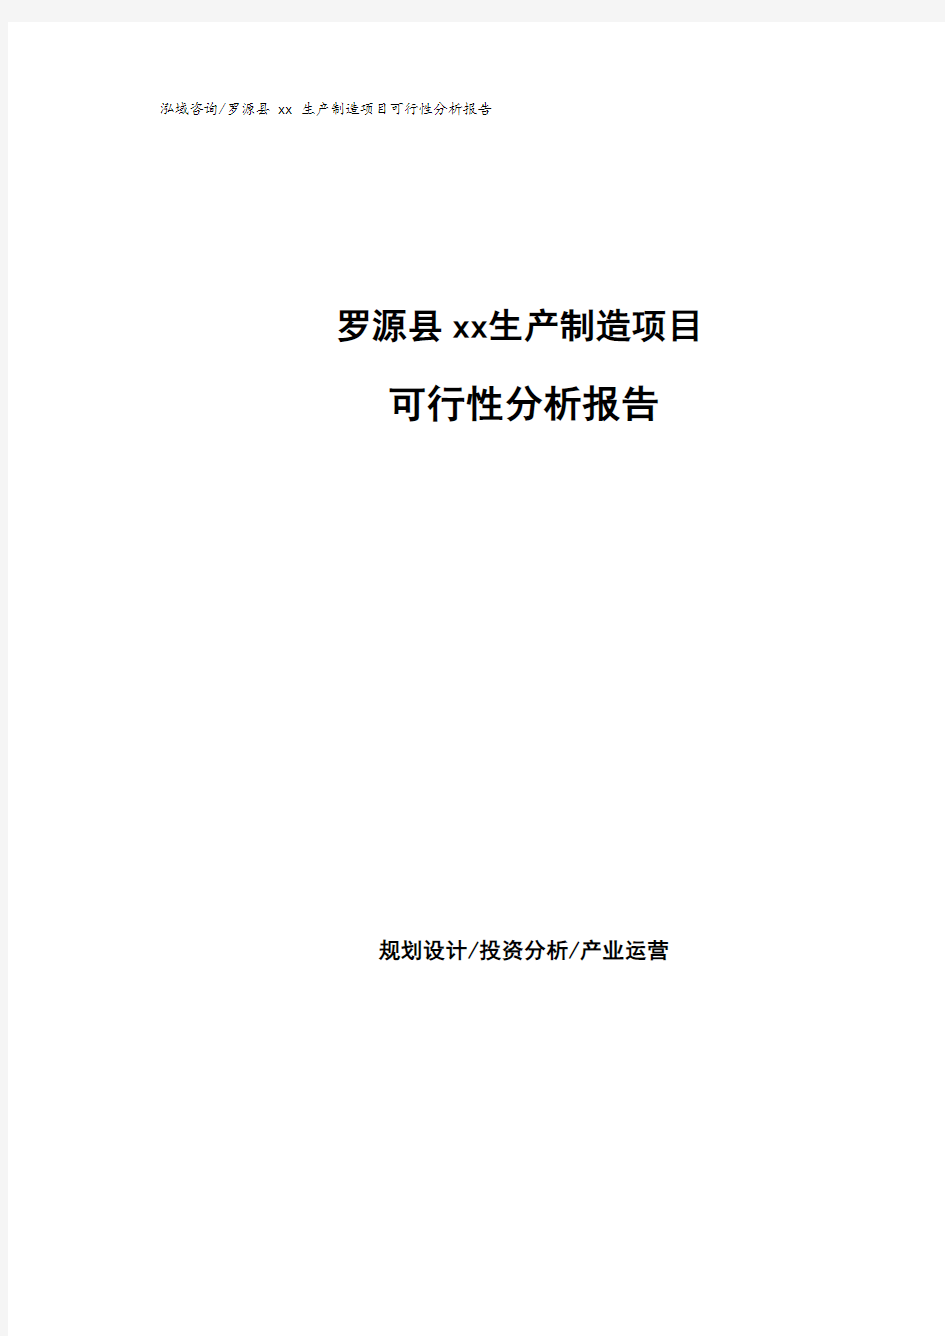 罗源县可行性研究报告(代项目建议书).pdf